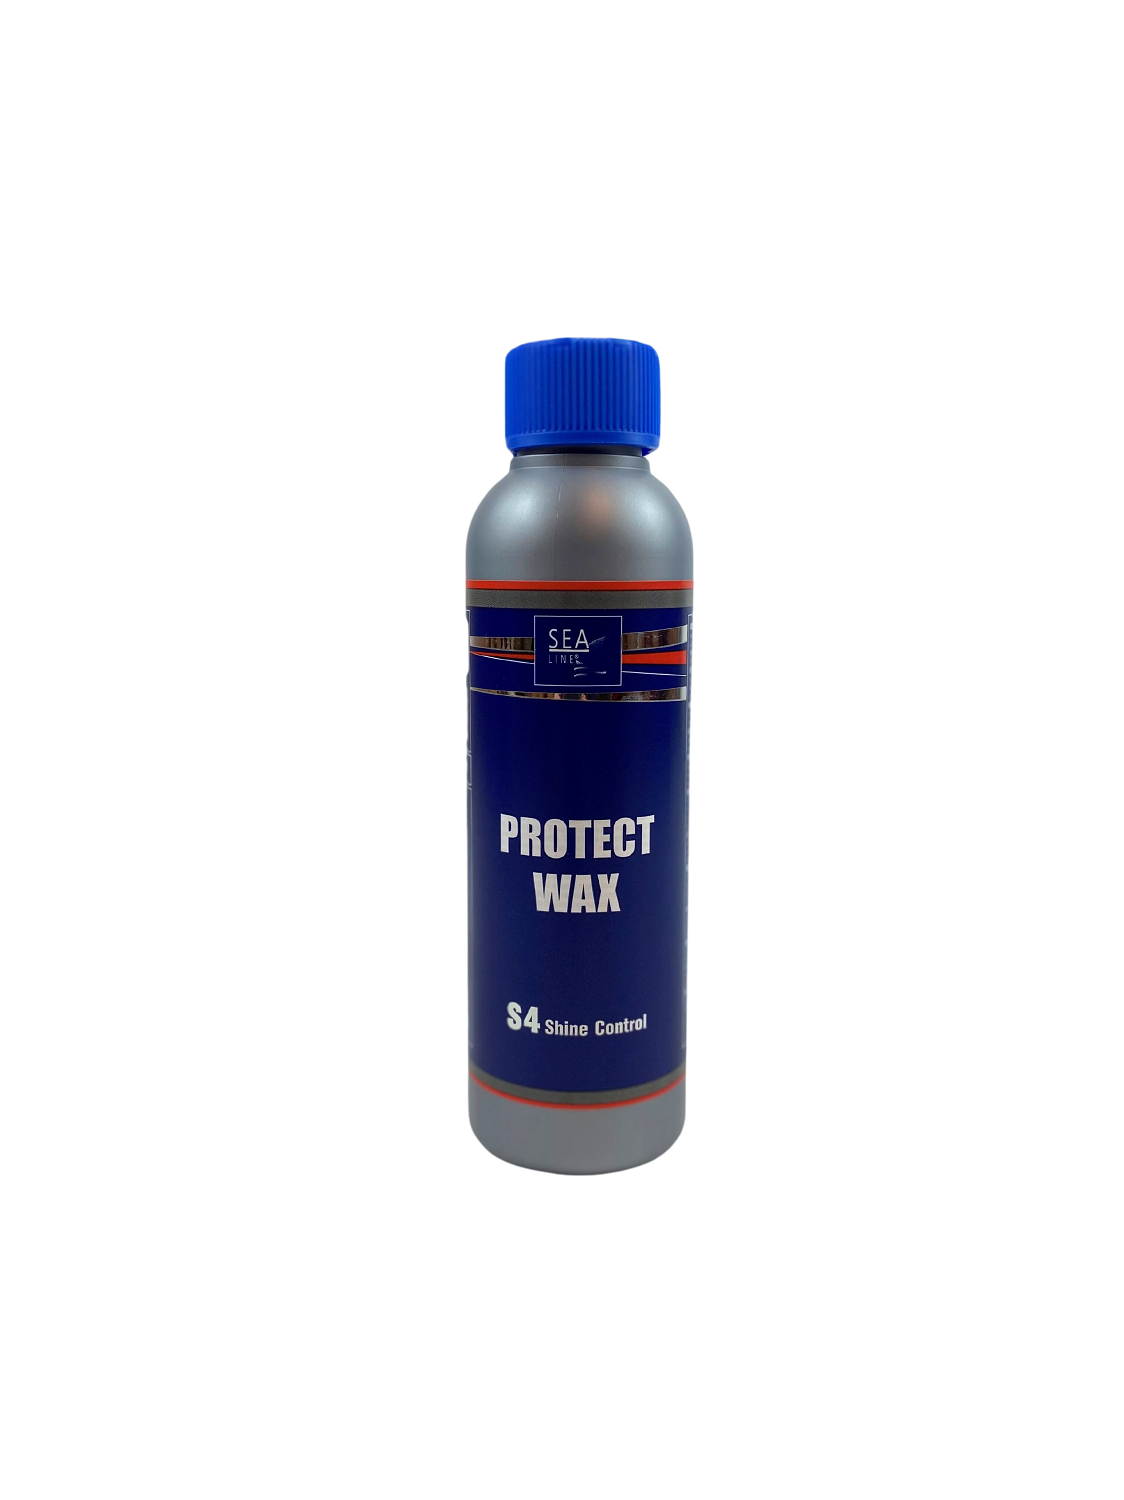 Universal wax - Plastic polishing and protection